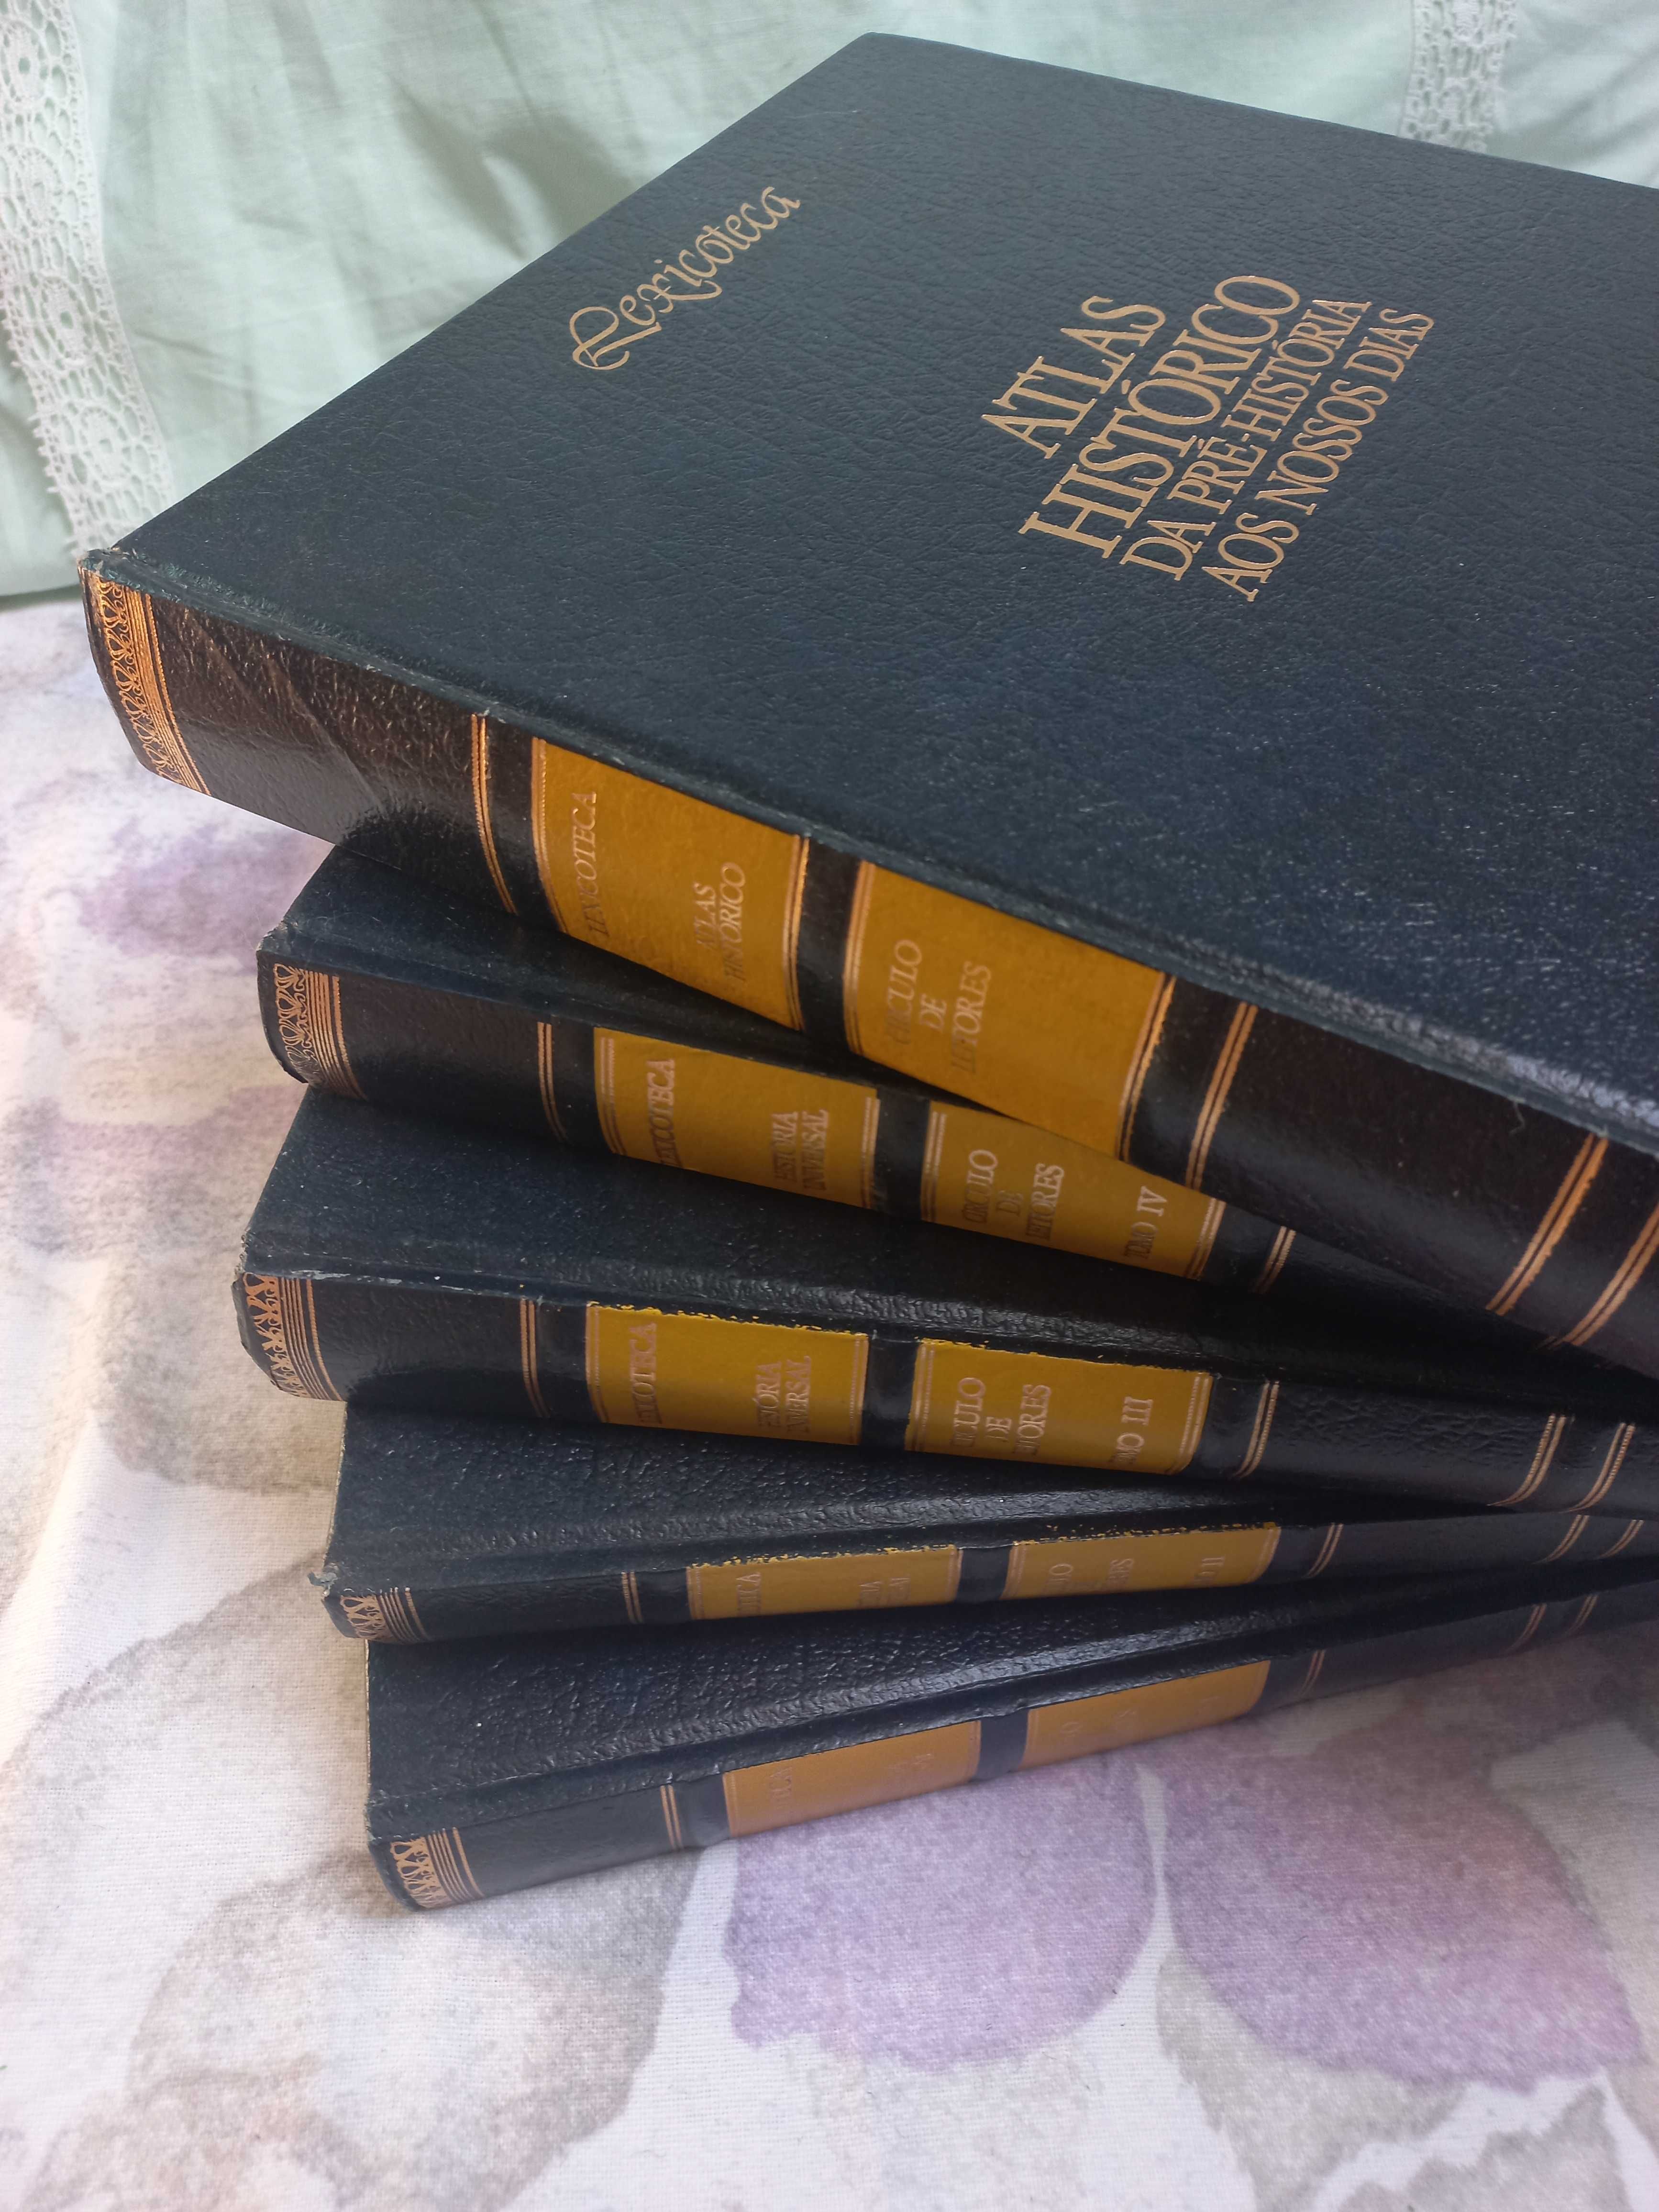 Coleção História Universal Lexicoteca Círculo de leitores 5 volumes